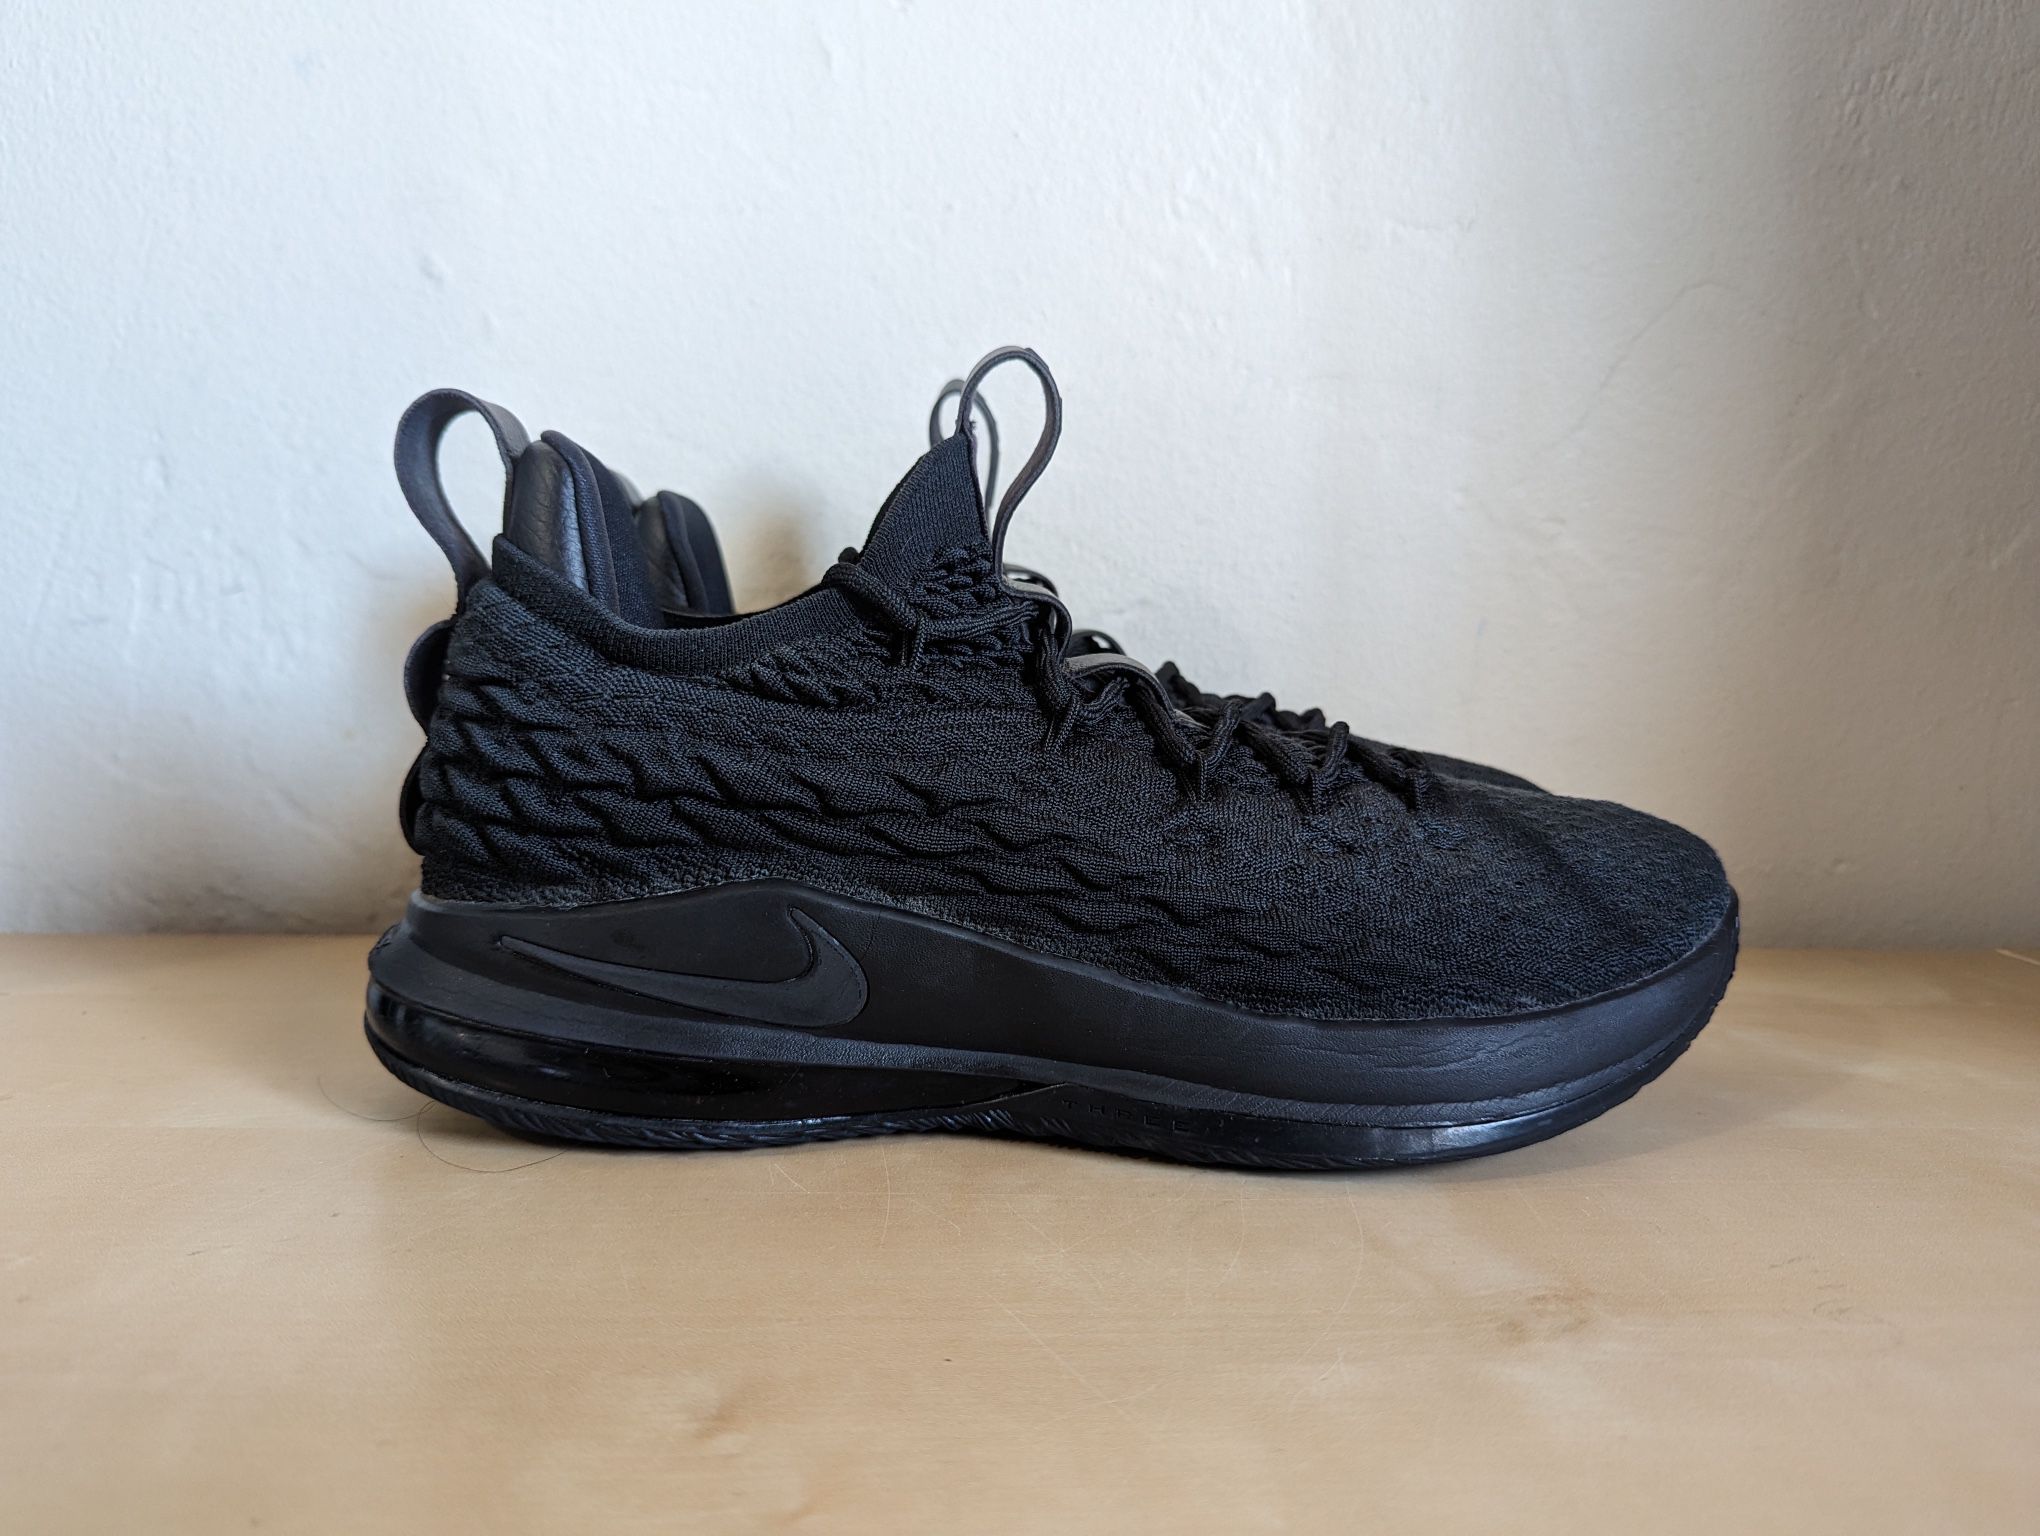 Nike LeBron 15 Low Blackout Triple Black Sneakers AO1755-004 Men’s Size 11.5